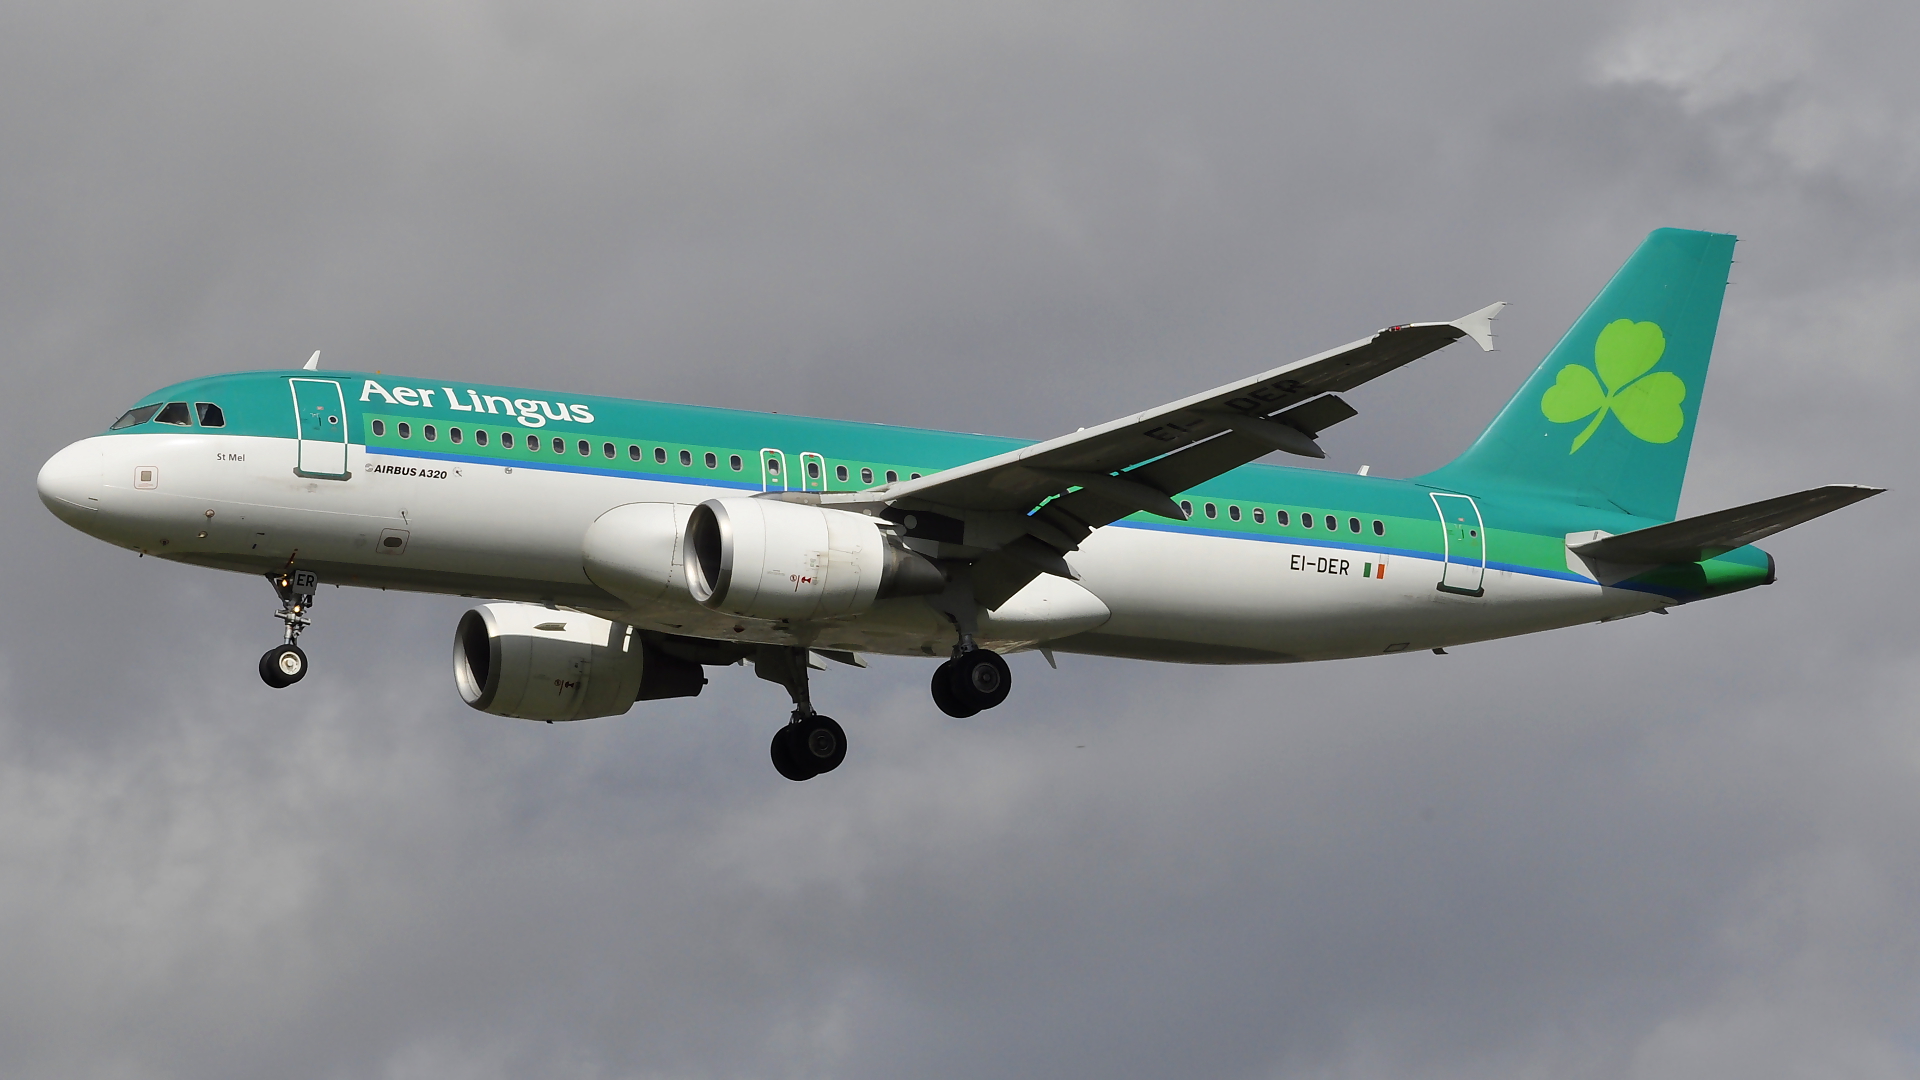 EI-DER ✈ Aer Lingus Airbus 320-214 @ London-Heathrow